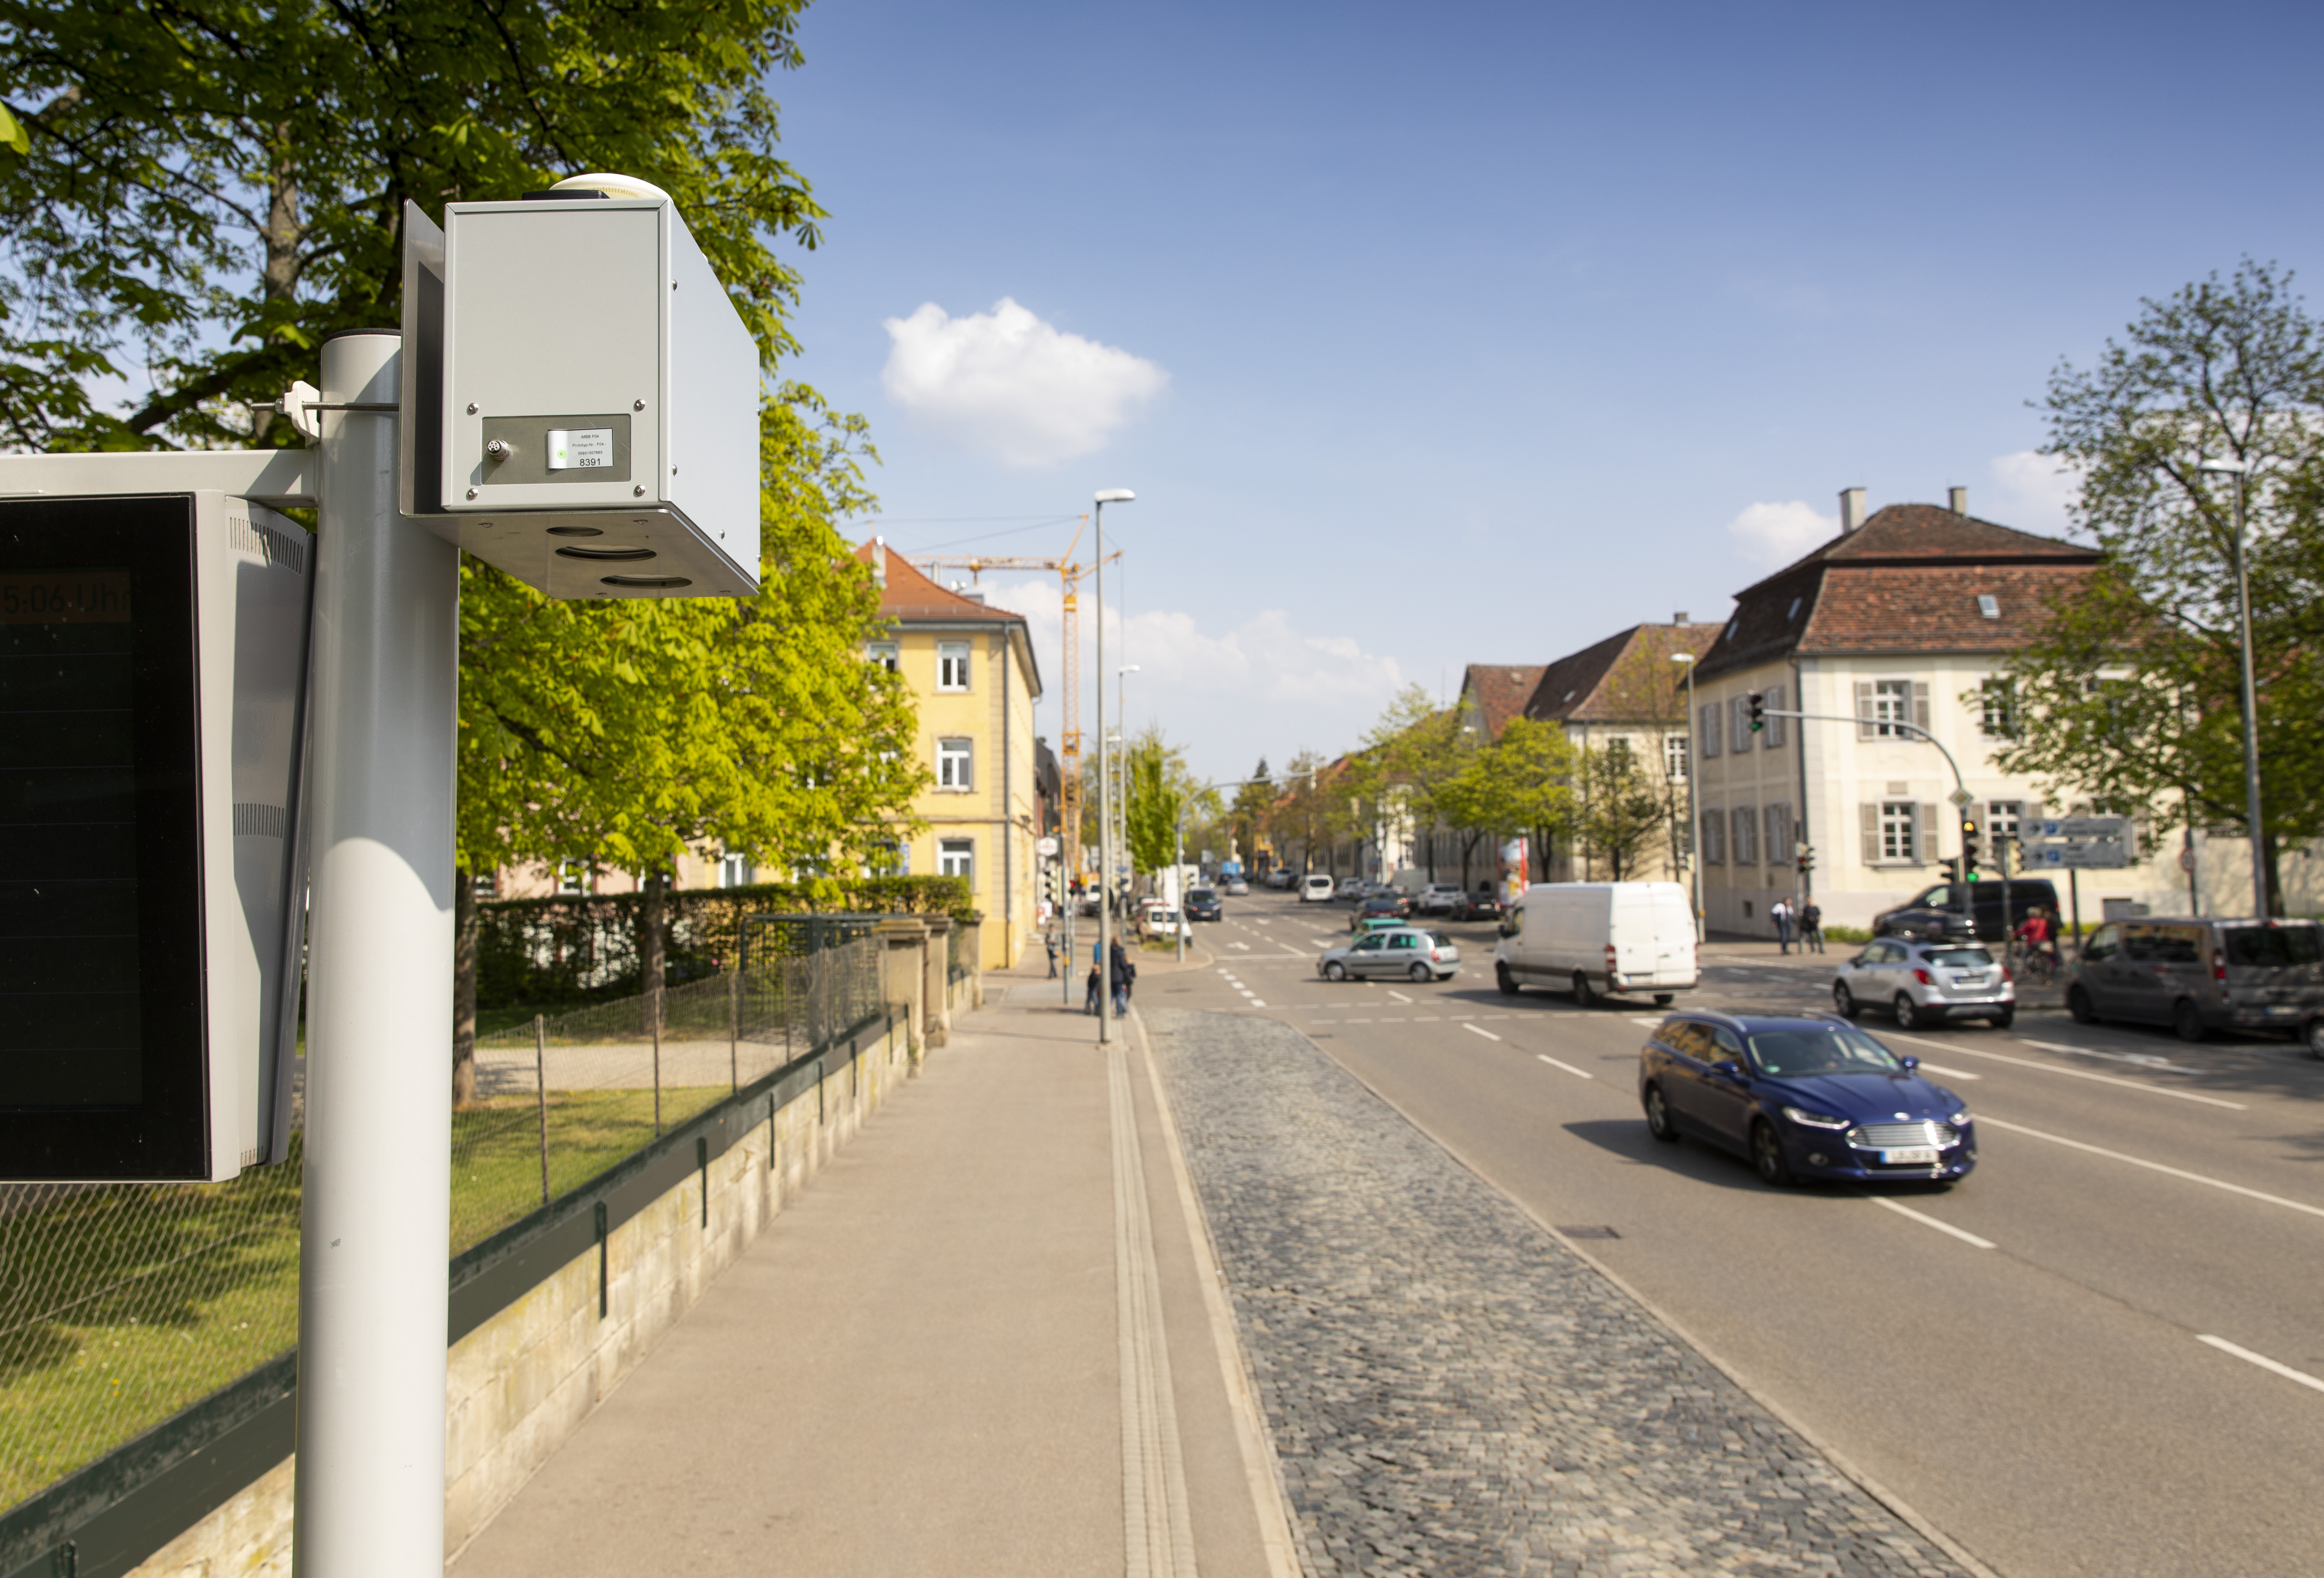 Più tecnologia per una migliore qualità dell'aria: Bosch aiuta le città di tutto il mondo nella lotta all'inquinamento